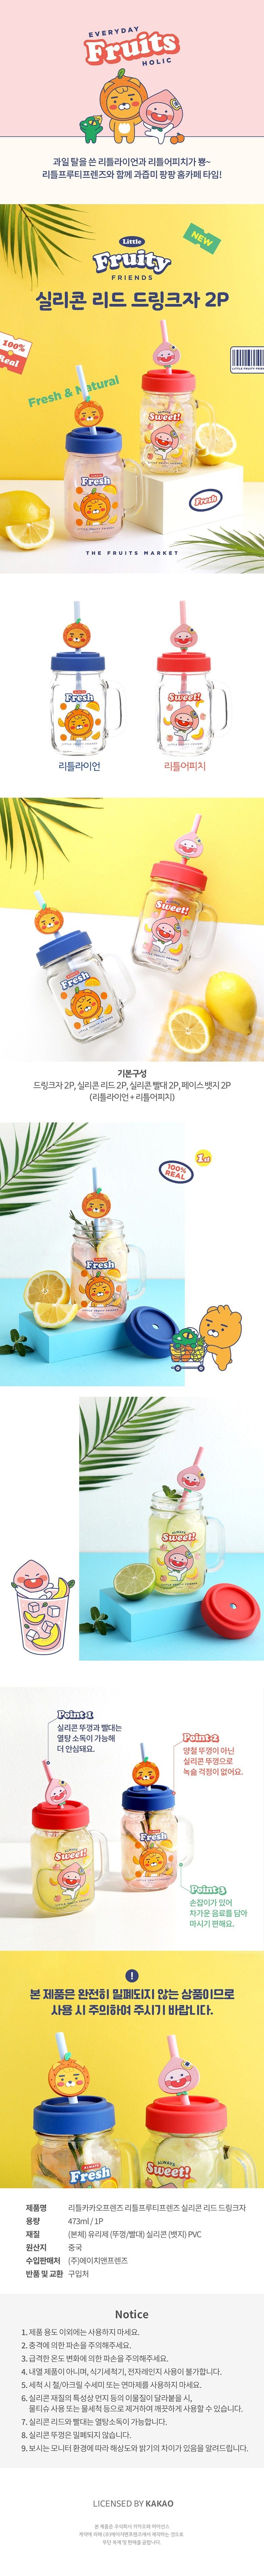 Kakao Friends Little Friends Fruity Silicone Lead Drink Jar details